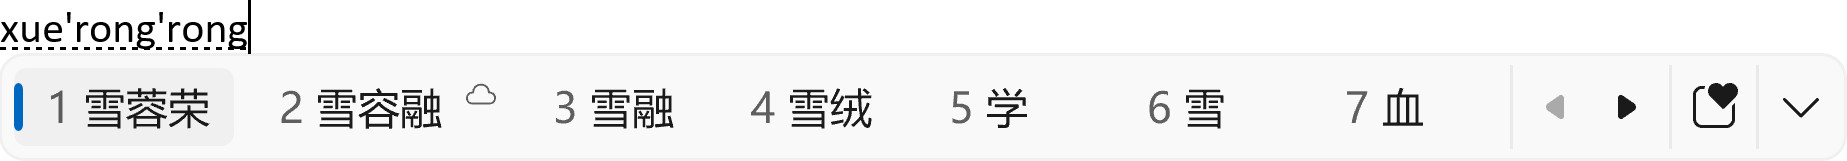 简体中文 IME 候选窗口，Bing 的单词建议排在第二位。